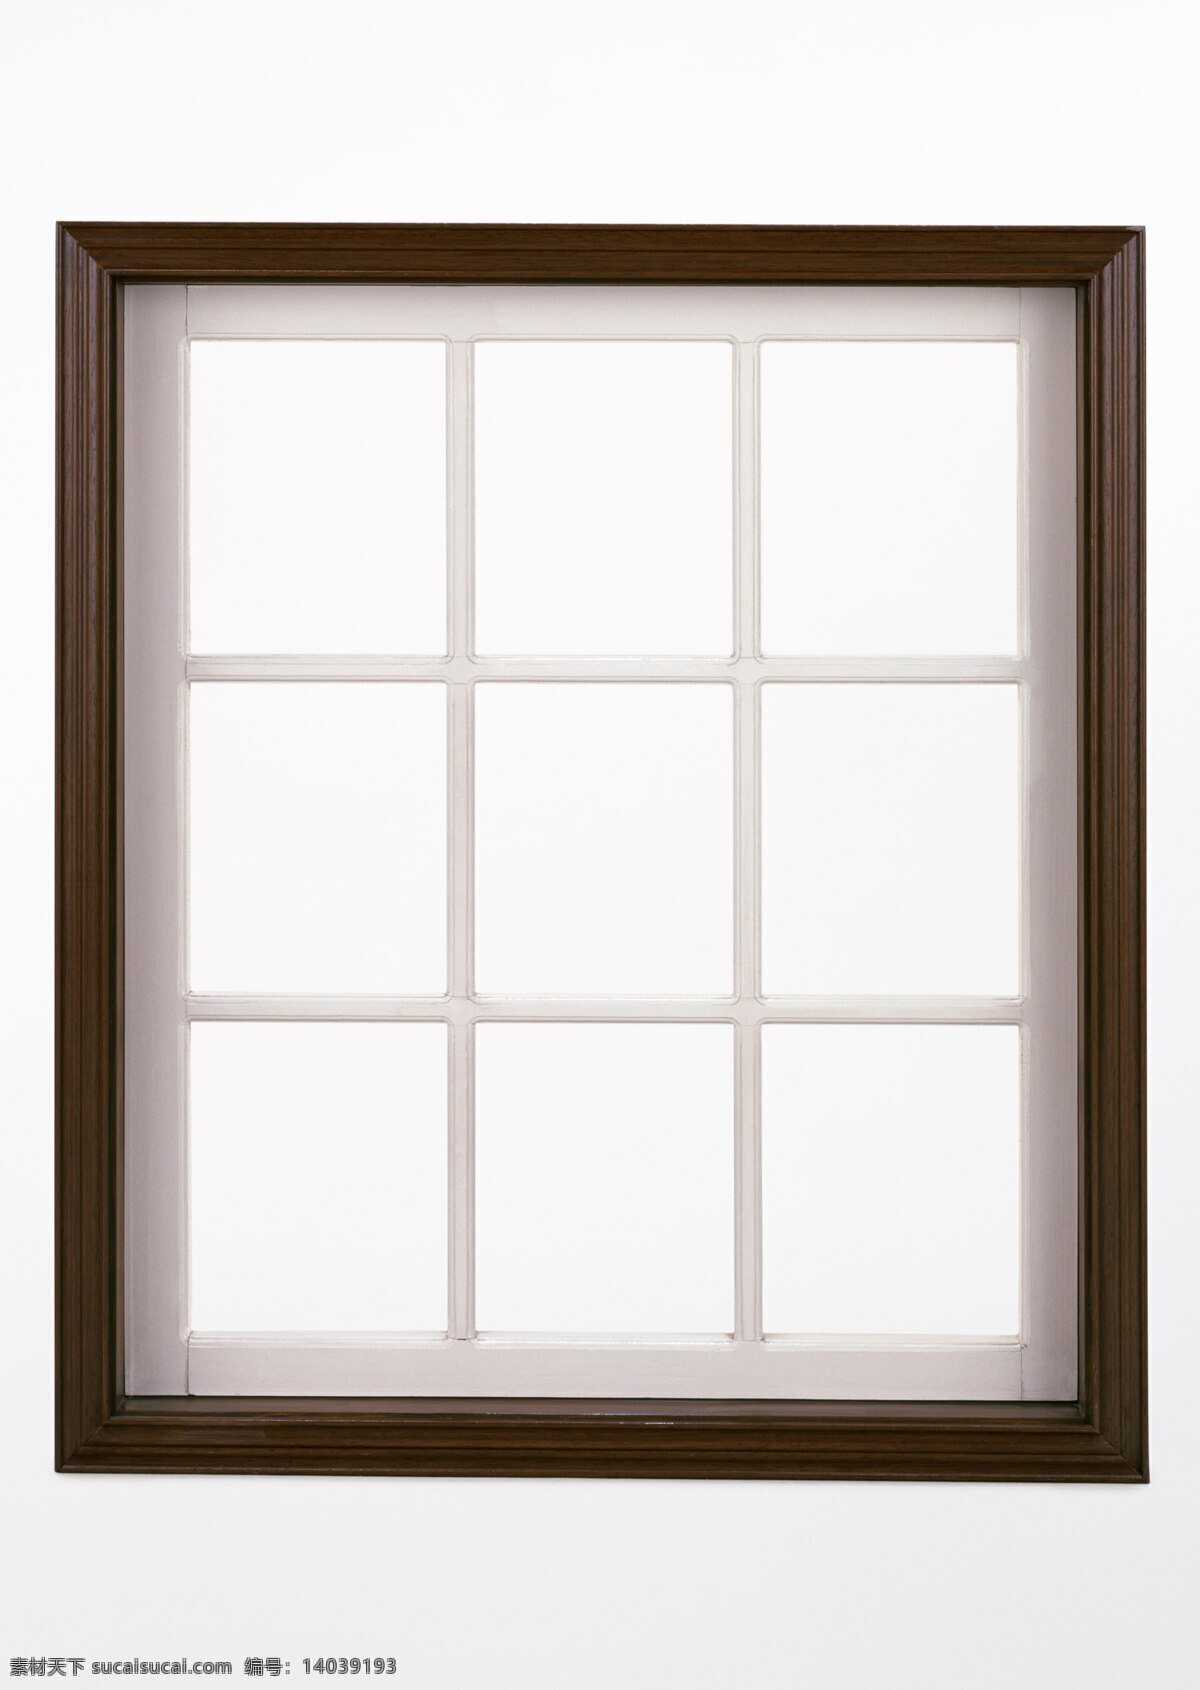 窗户材质贴图 材质贴图 窗门 窗框 门窗